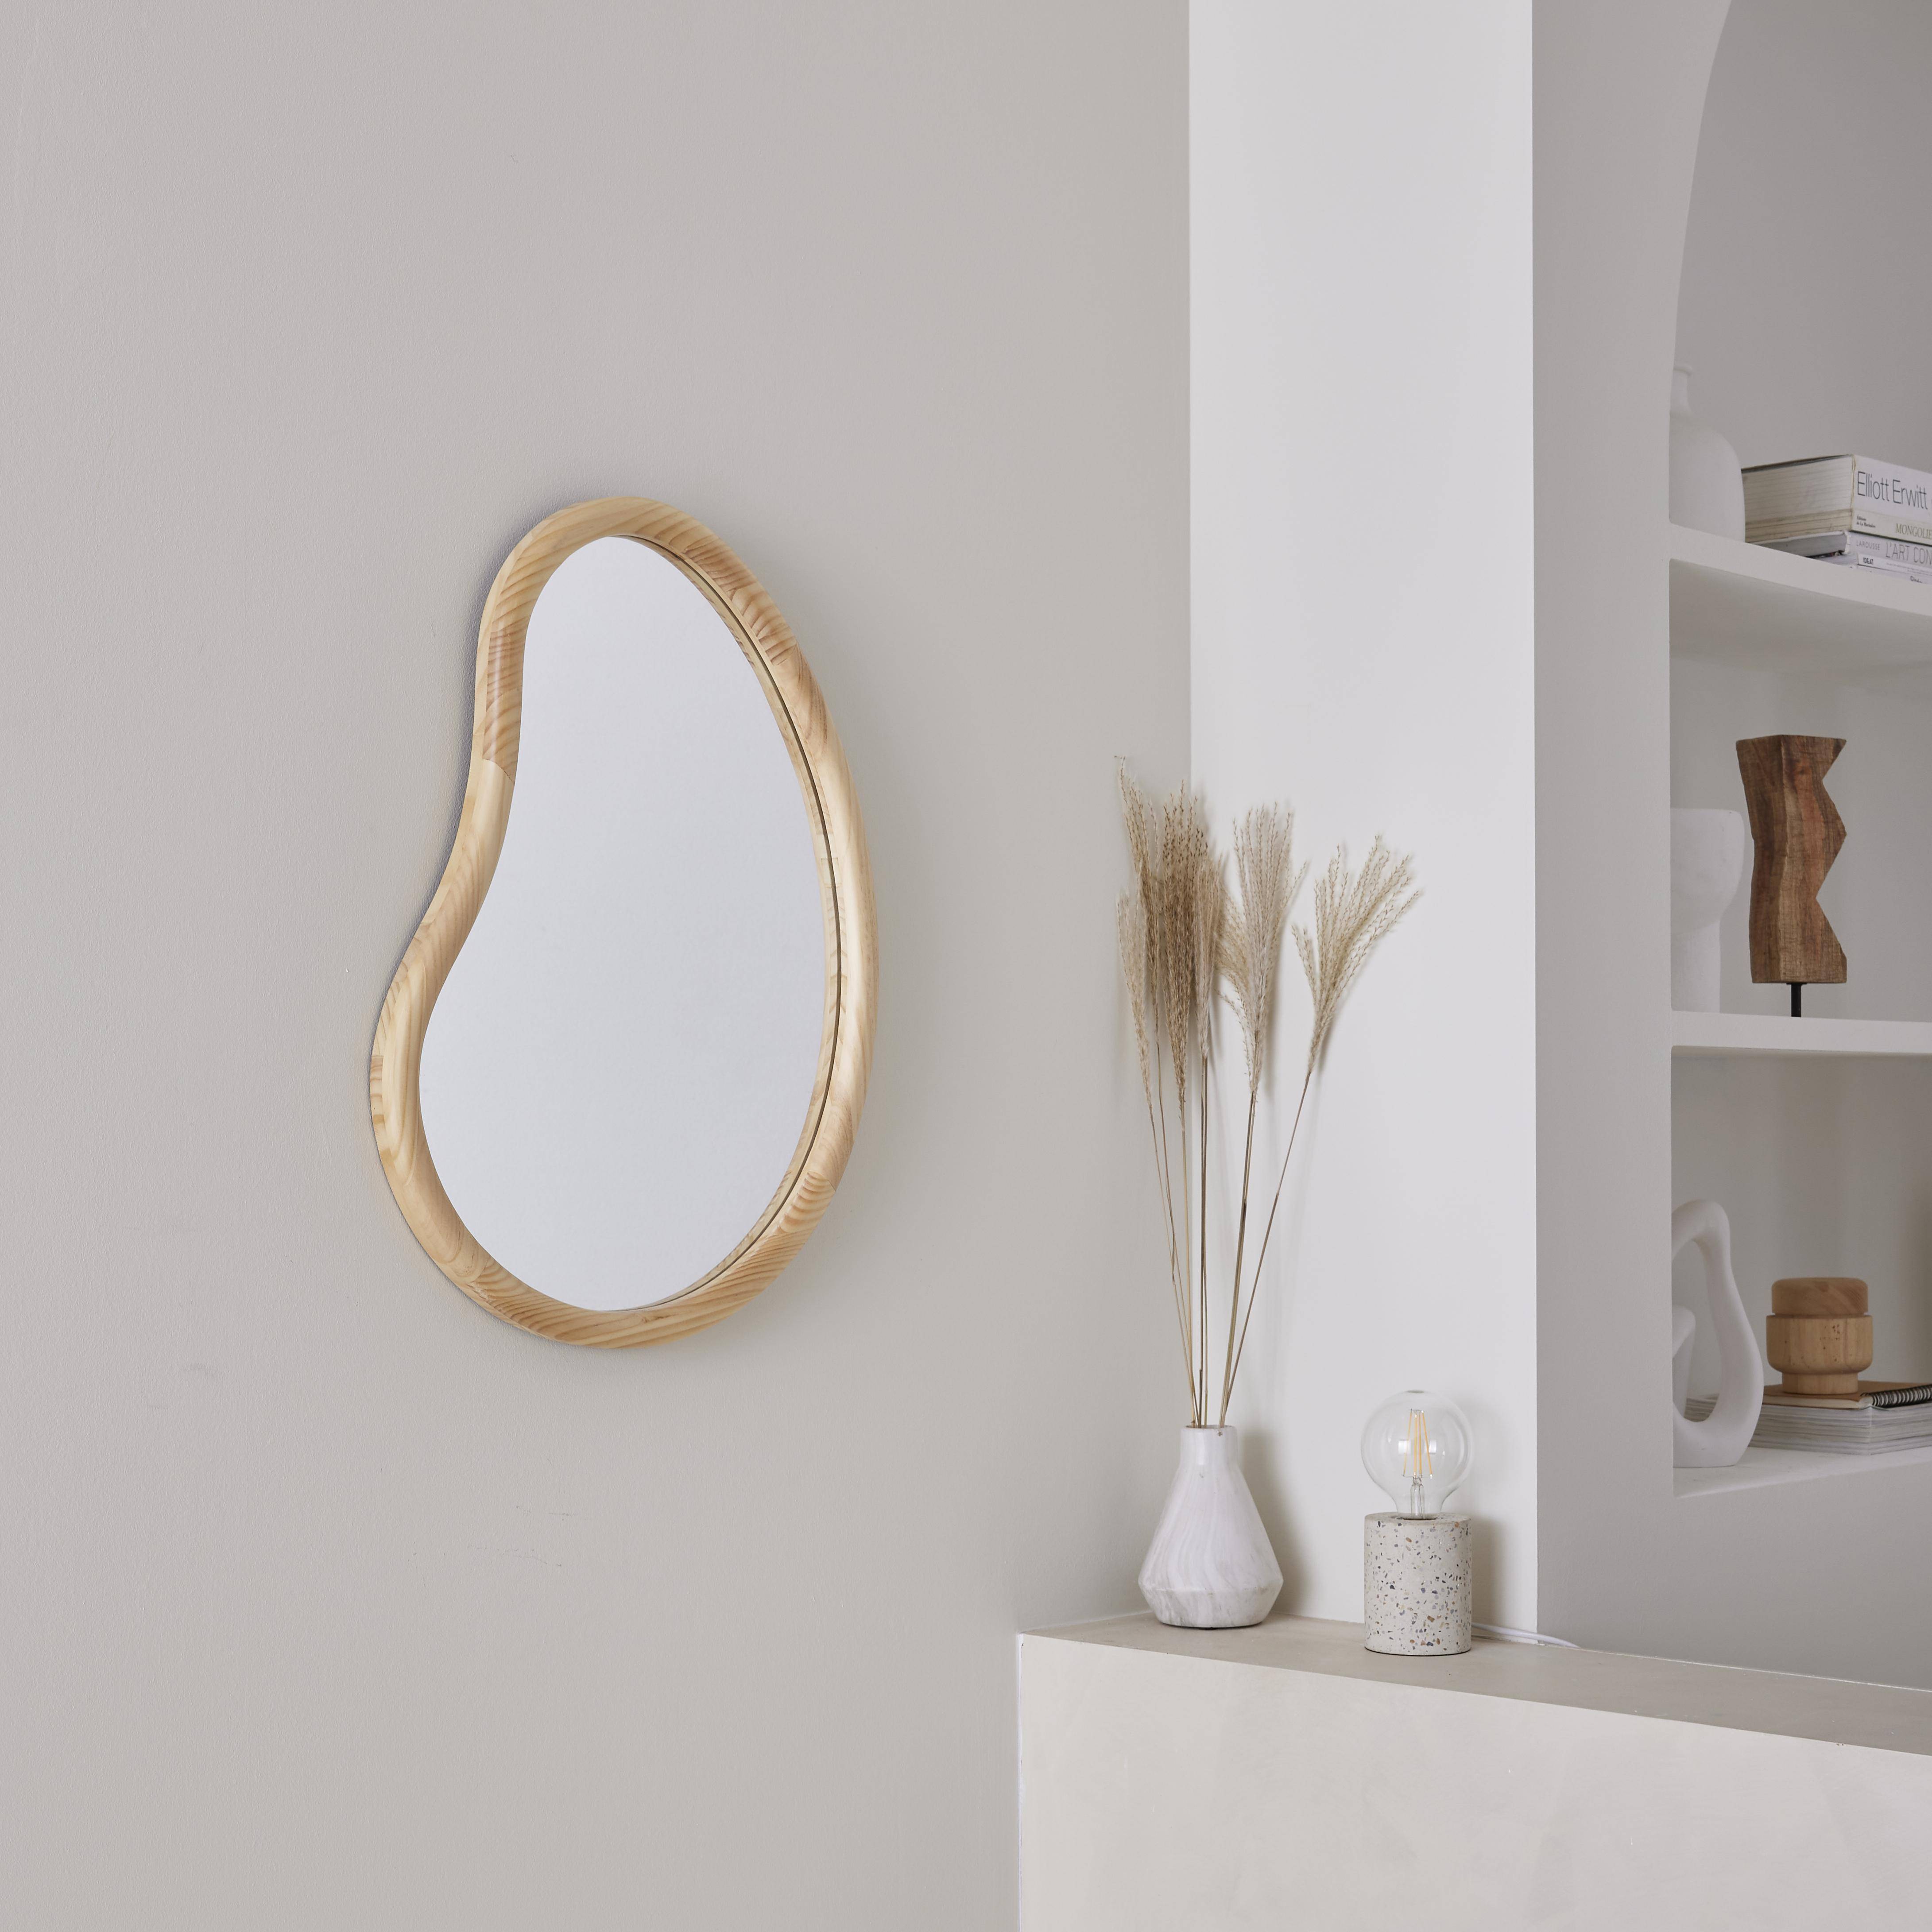 Organischer Spiegel aus Tannenholz 65cm 3cm dick naturfarben ideal für Eingang, Schlafzimmer oder Bad Photo1